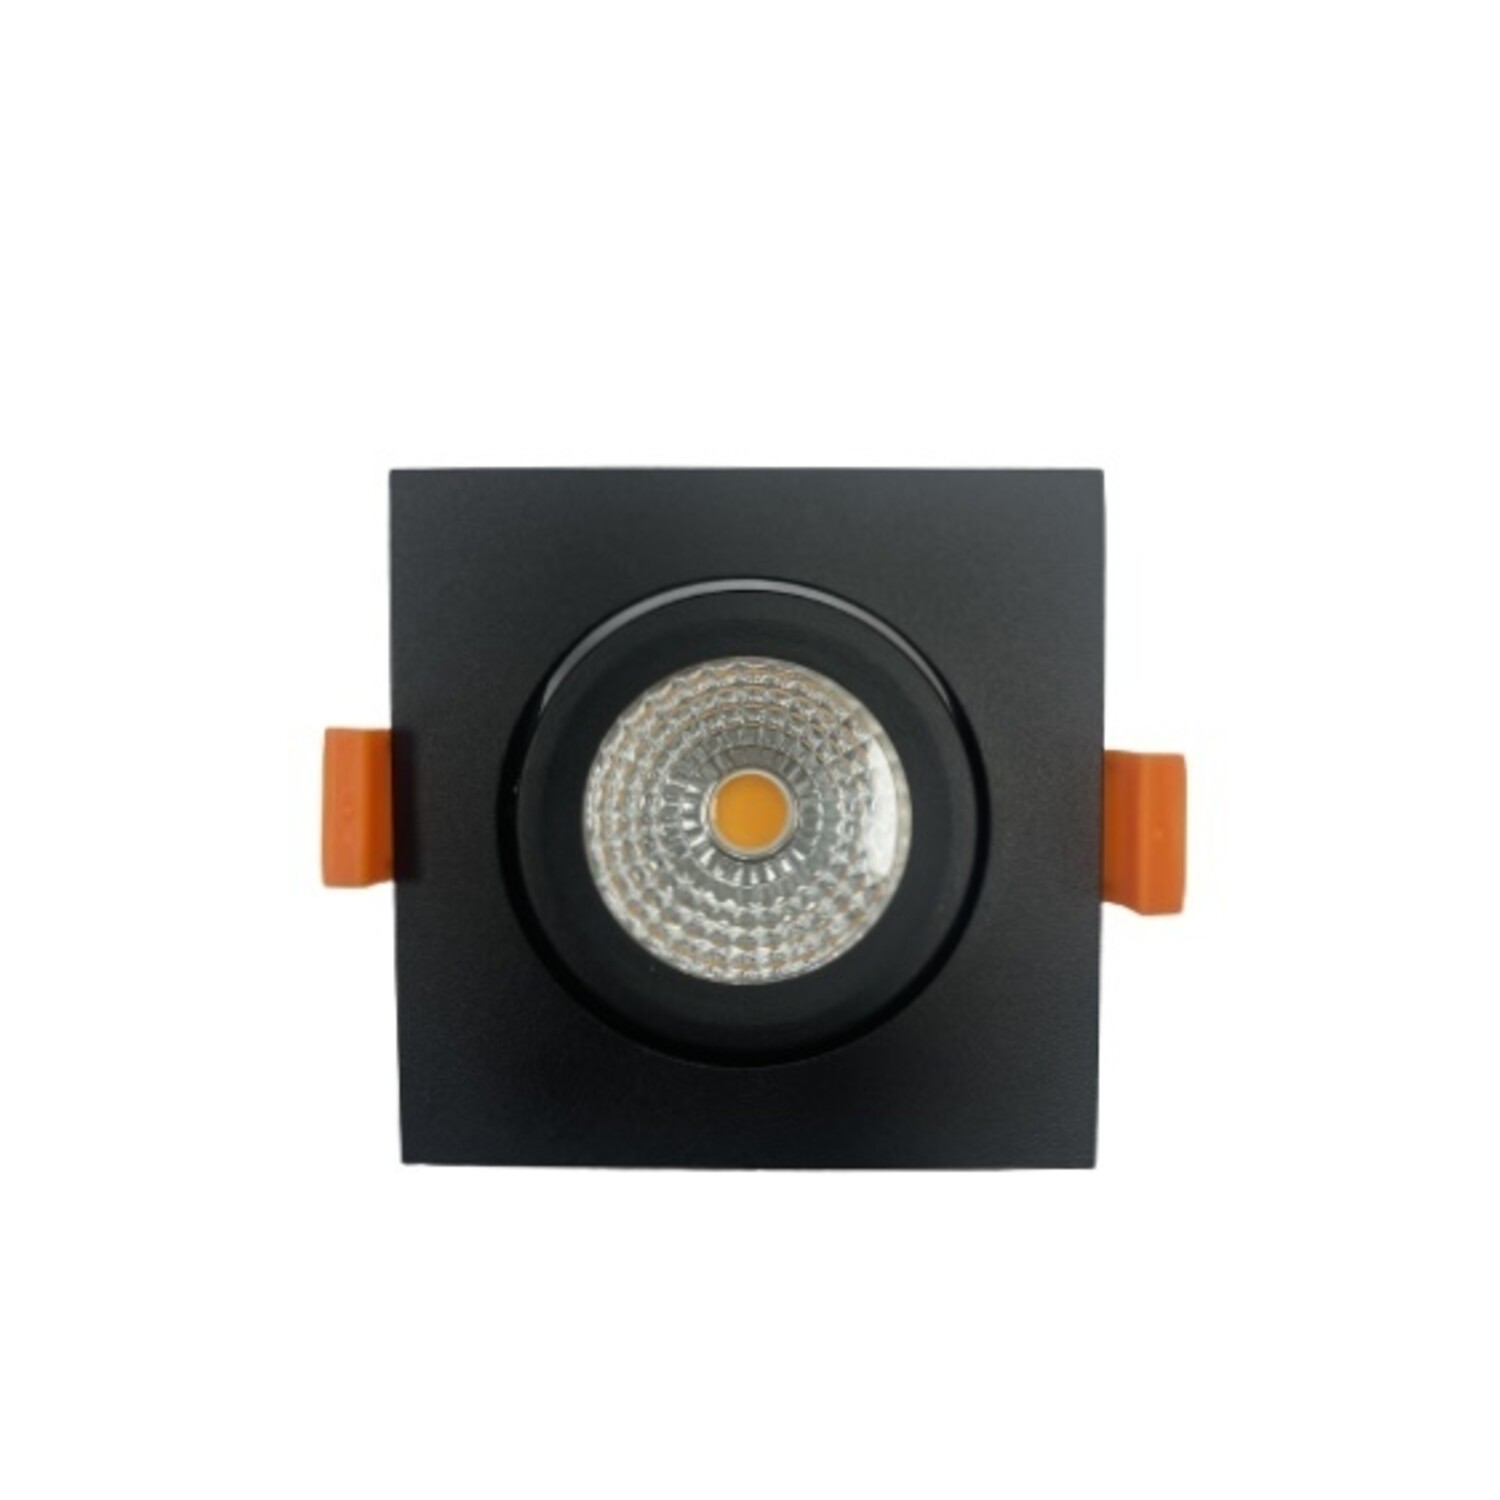 LED Lampenfassung mit E27 Fassung - 1m Nylonkabel - Bronze - max. 50W 